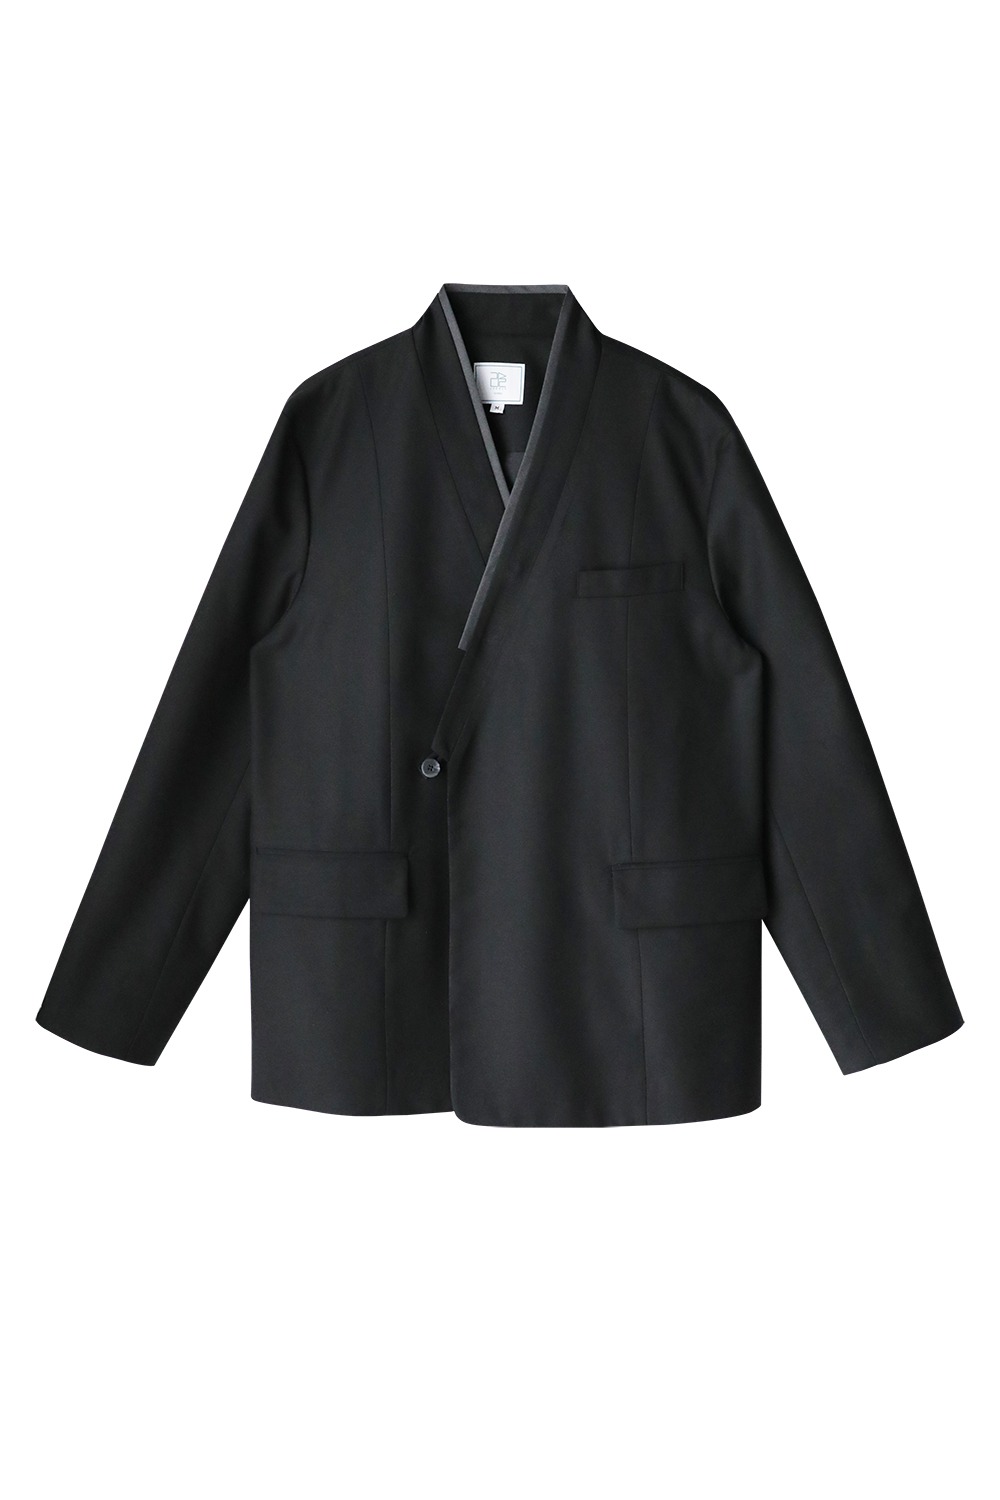 Leerum Fourseasons Suit Jacket [Black]